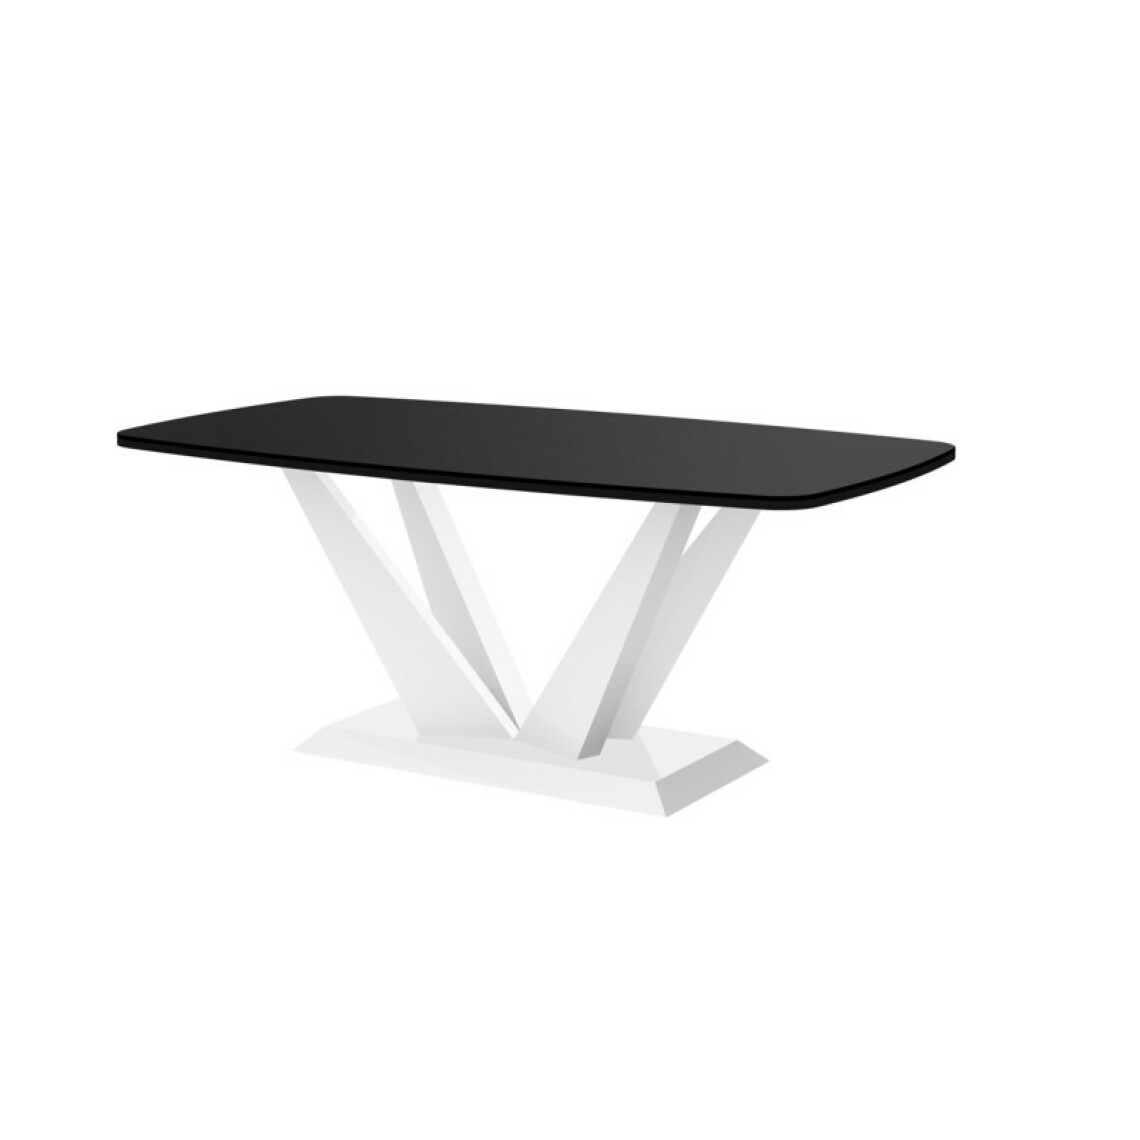 Carellia - Table basse design 125 cm x 68 cm x 50 cm - Noir - Tables basses